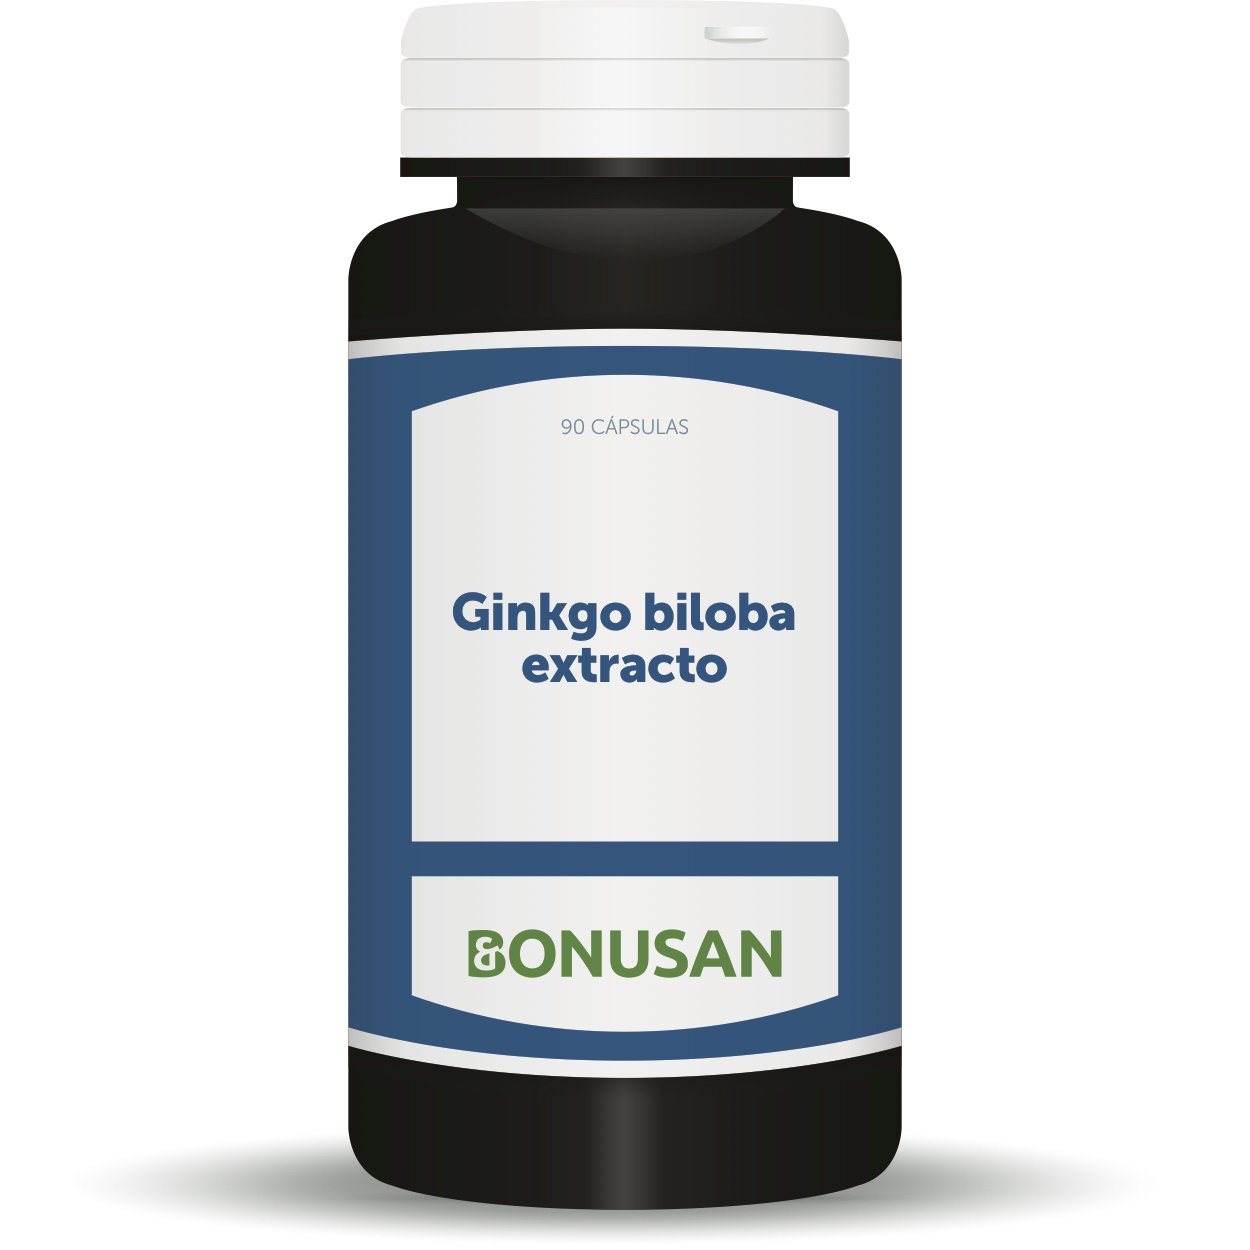 Ginkgo Biloba Extracto 90 Capsulas | Bonusan - Dietetica Ferrer